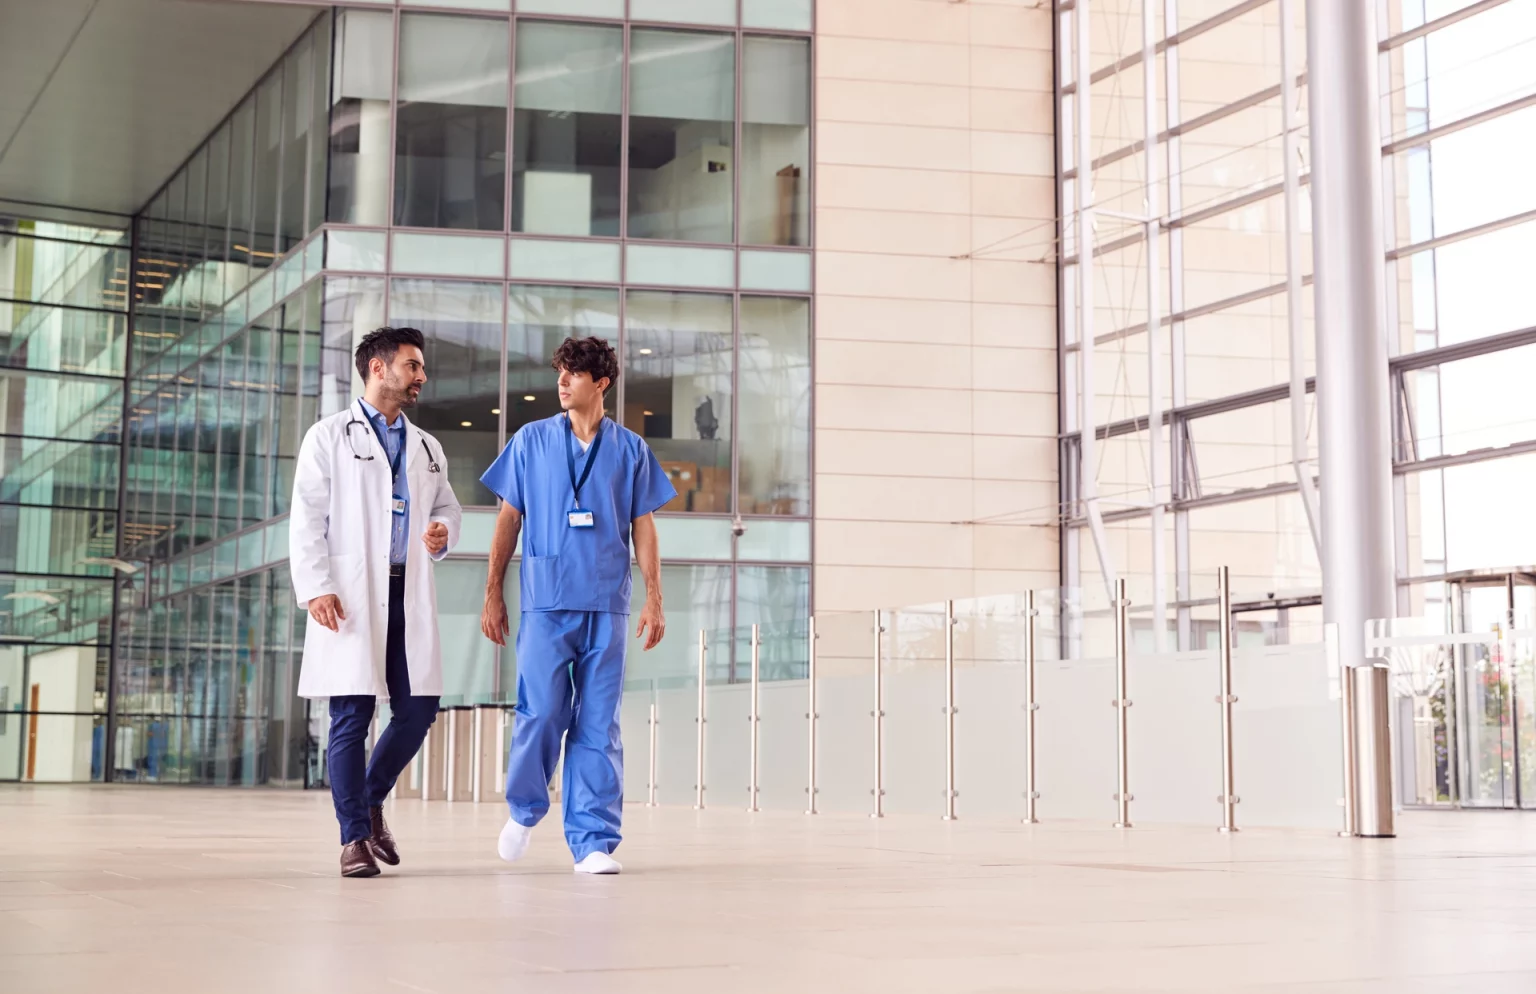 Deux médecins en discussion dans un environnement hospitalier moderne, reflétant l'échange professionnel dans le domaine de la santé.